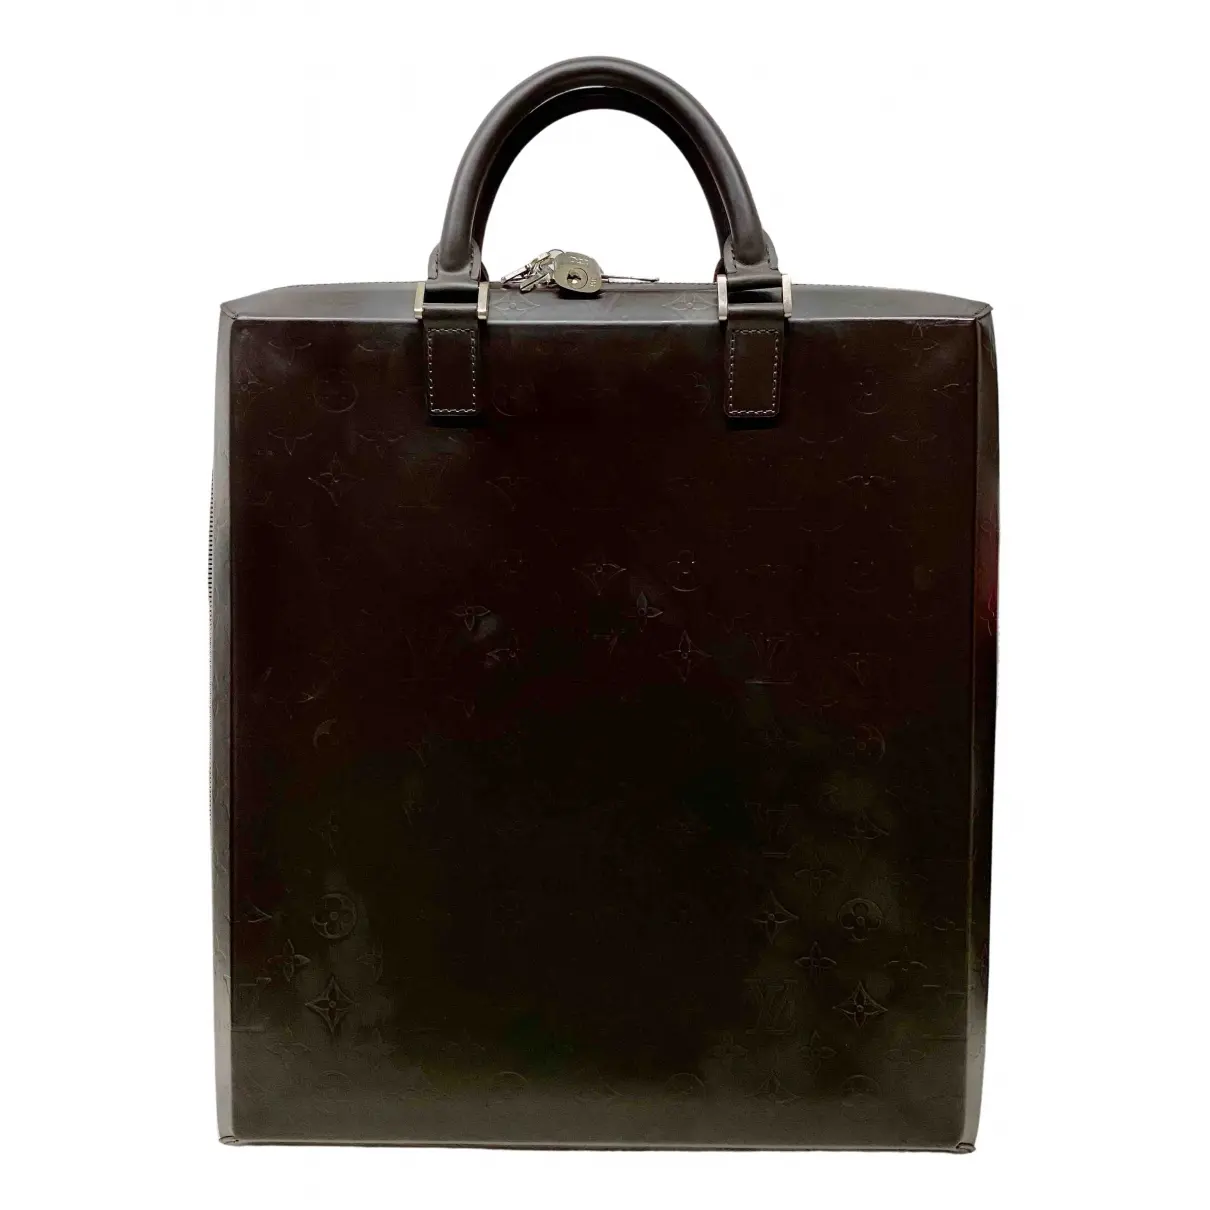 Leather satchel Louis Vuitton - Vintage